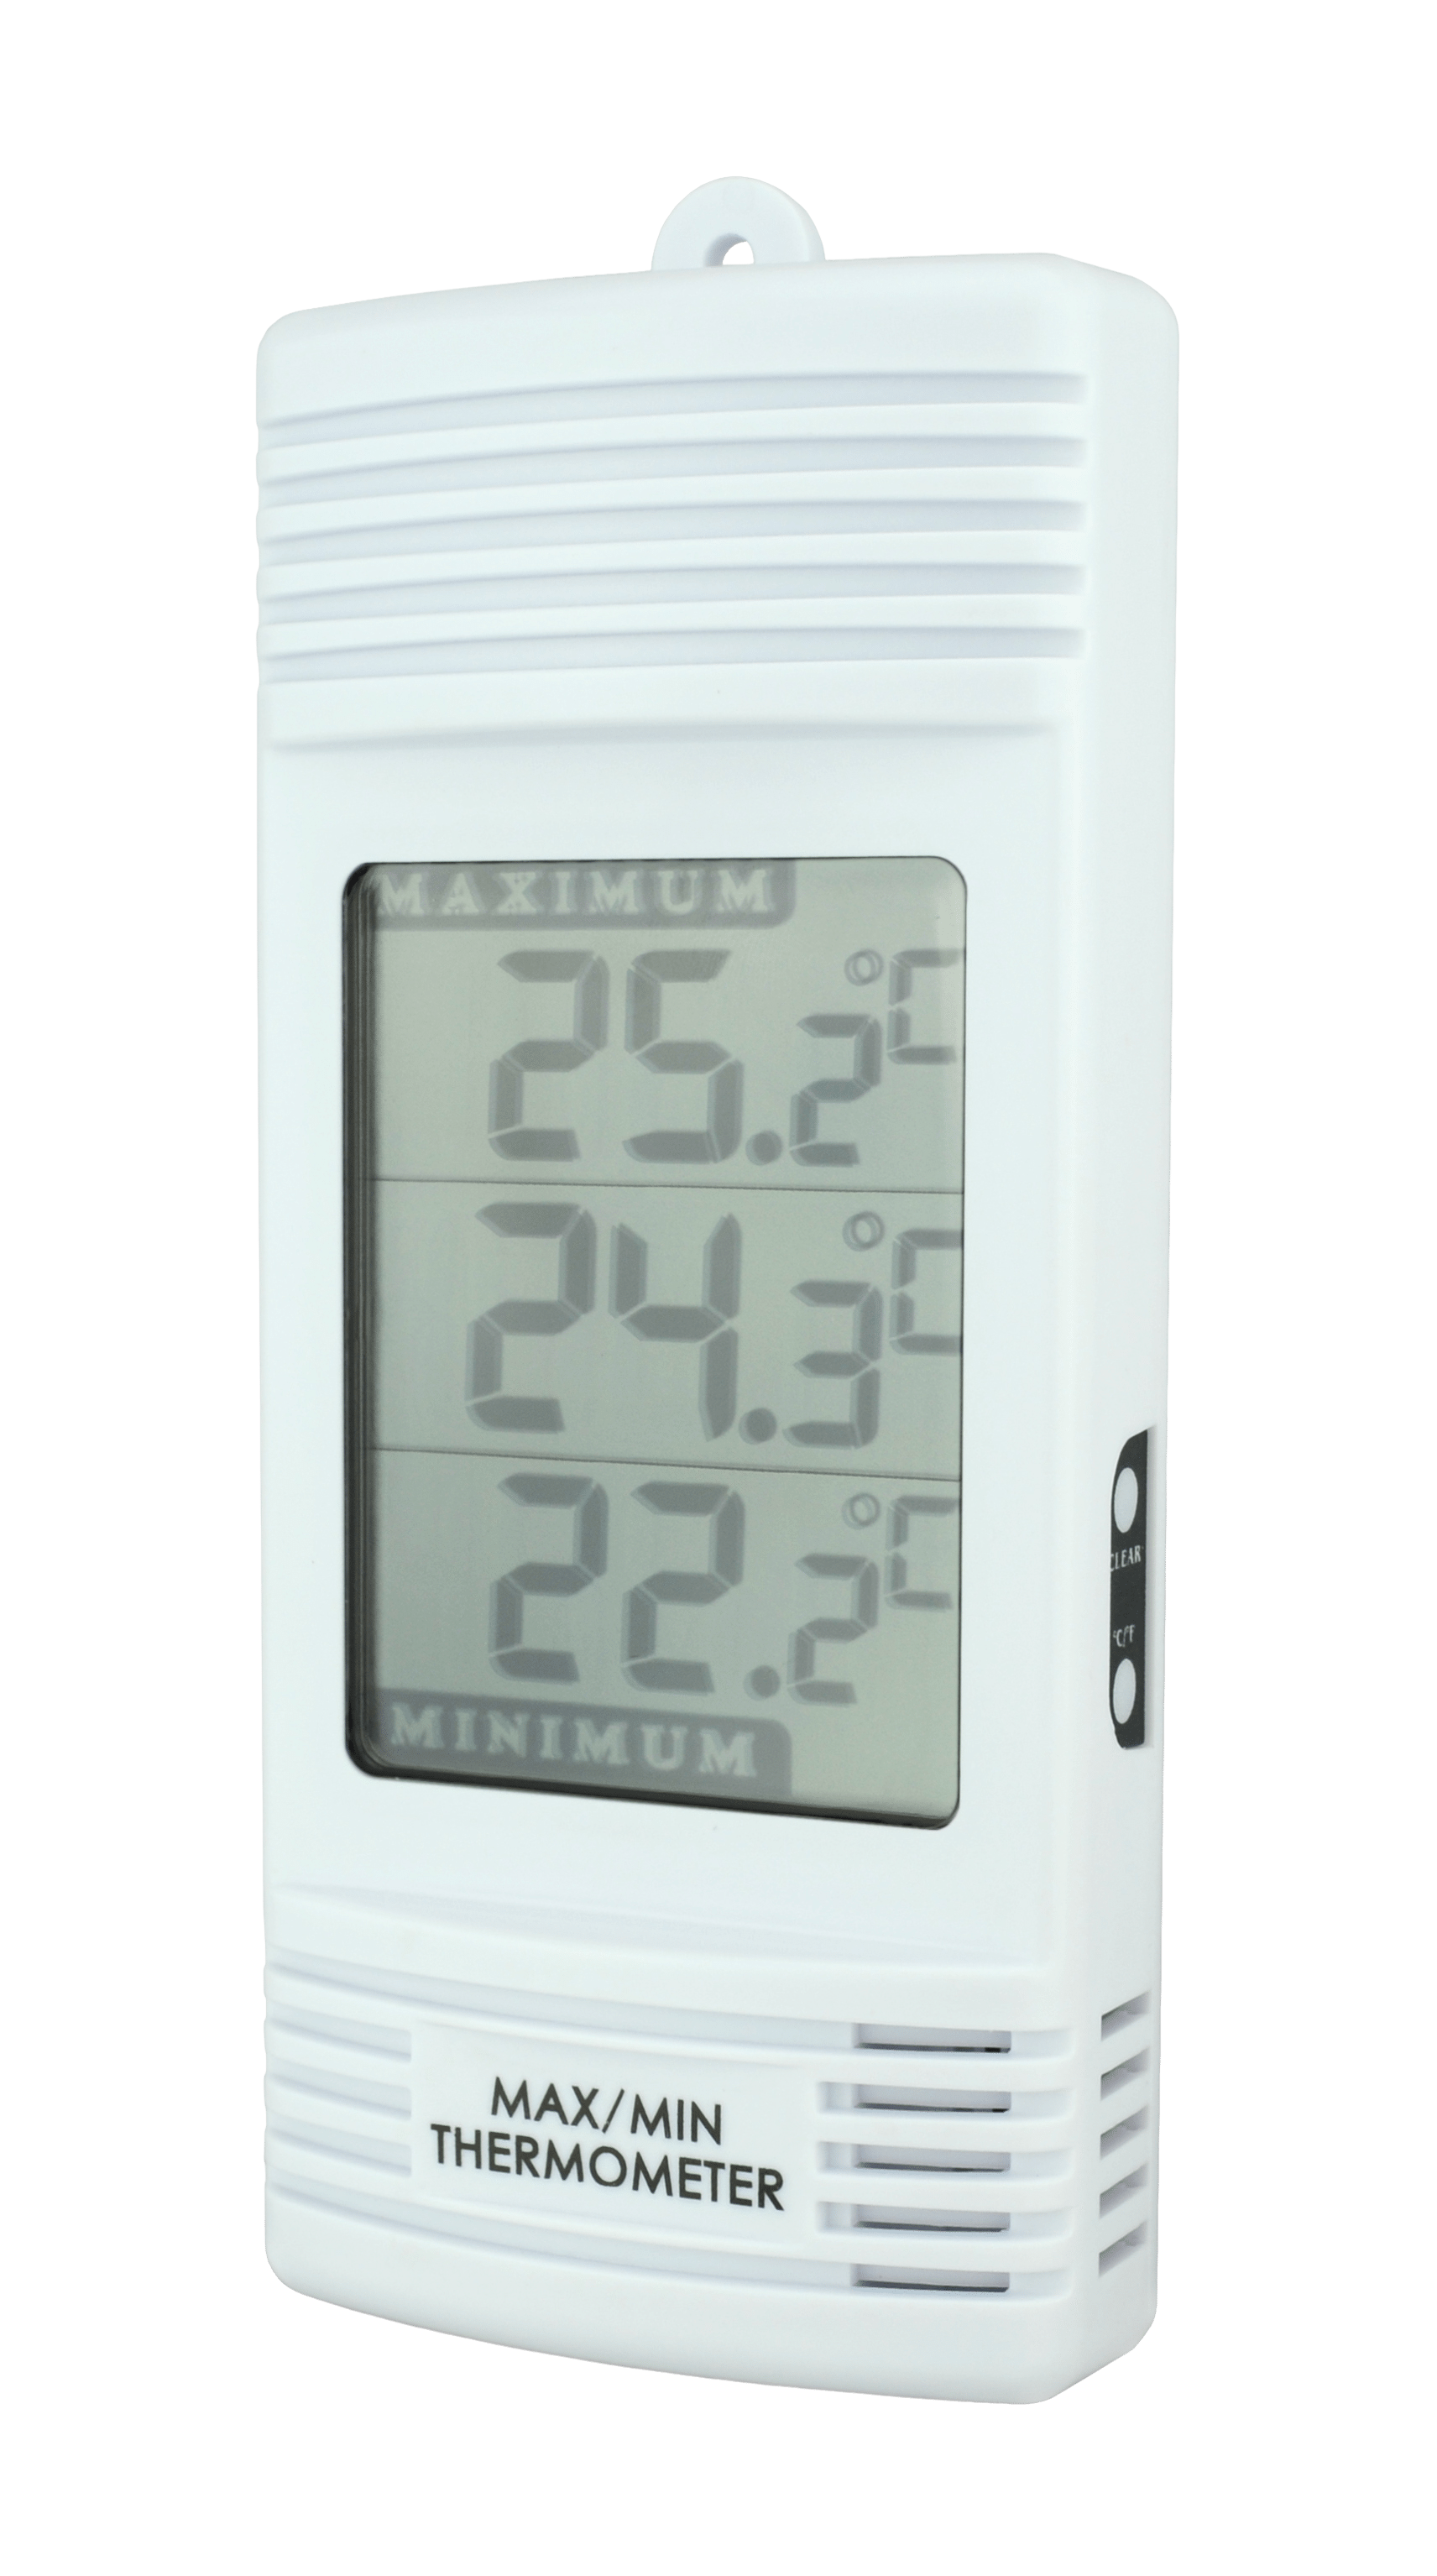 Thermomètre d'exterieur mini maxi, vente au meilleur prix